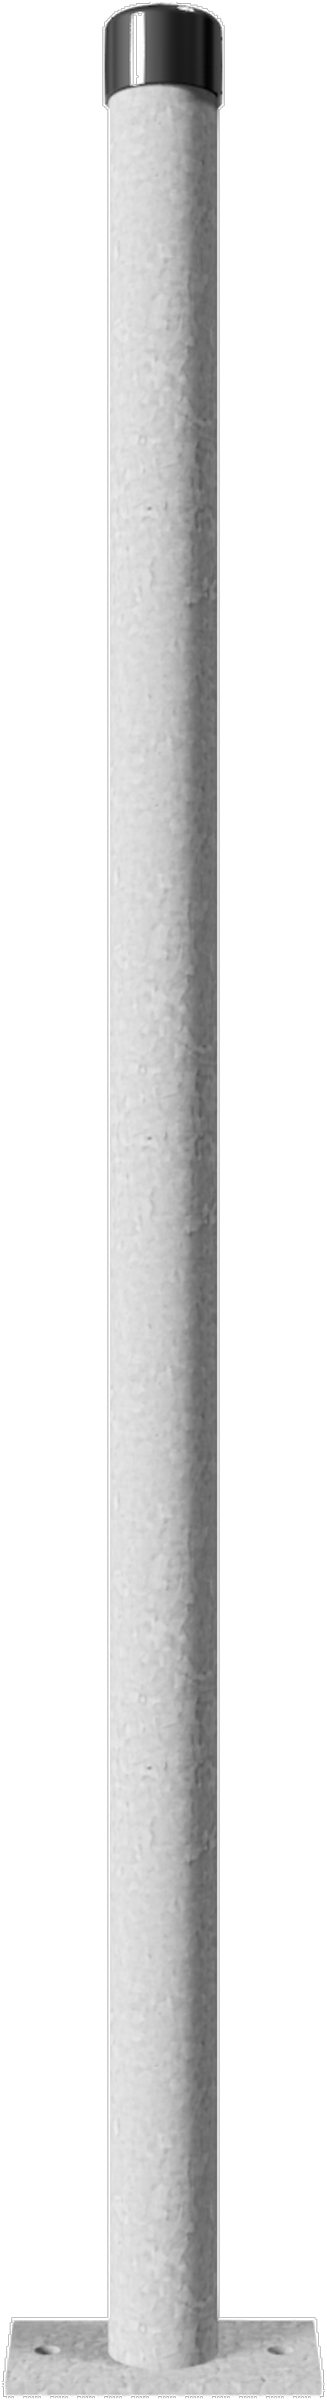 Schake Absperrpfosten OD Ø 42 mm ohne Öse verzinkt